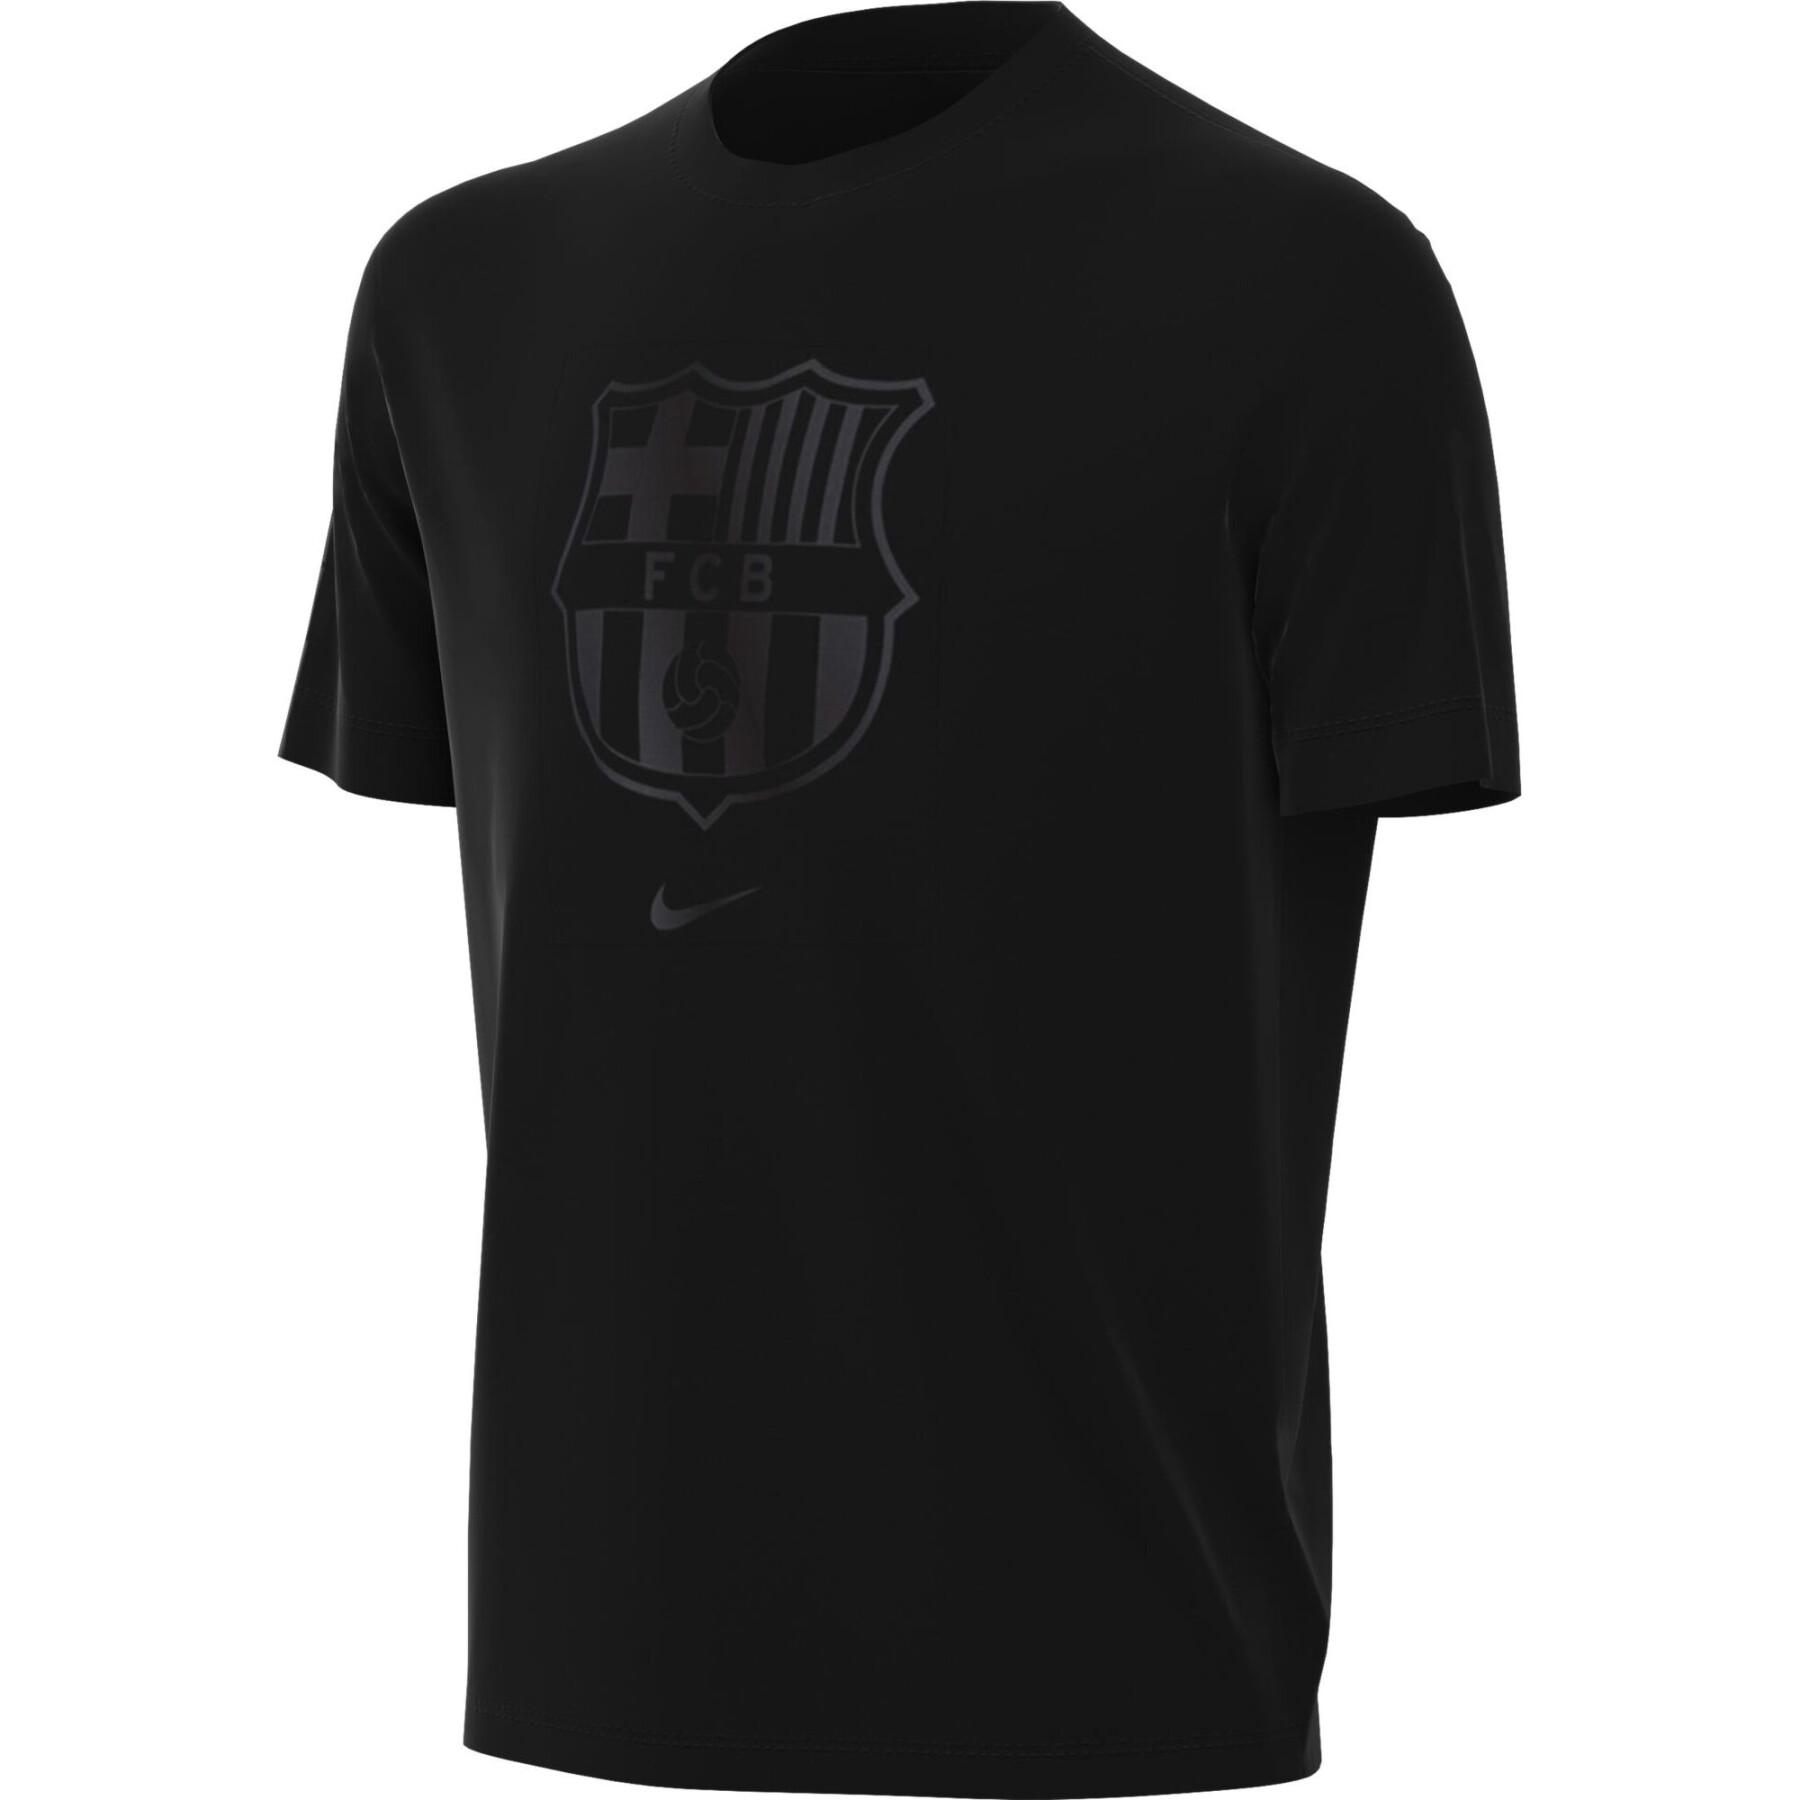 Kinder T-Shirt FC Barcelona Crest